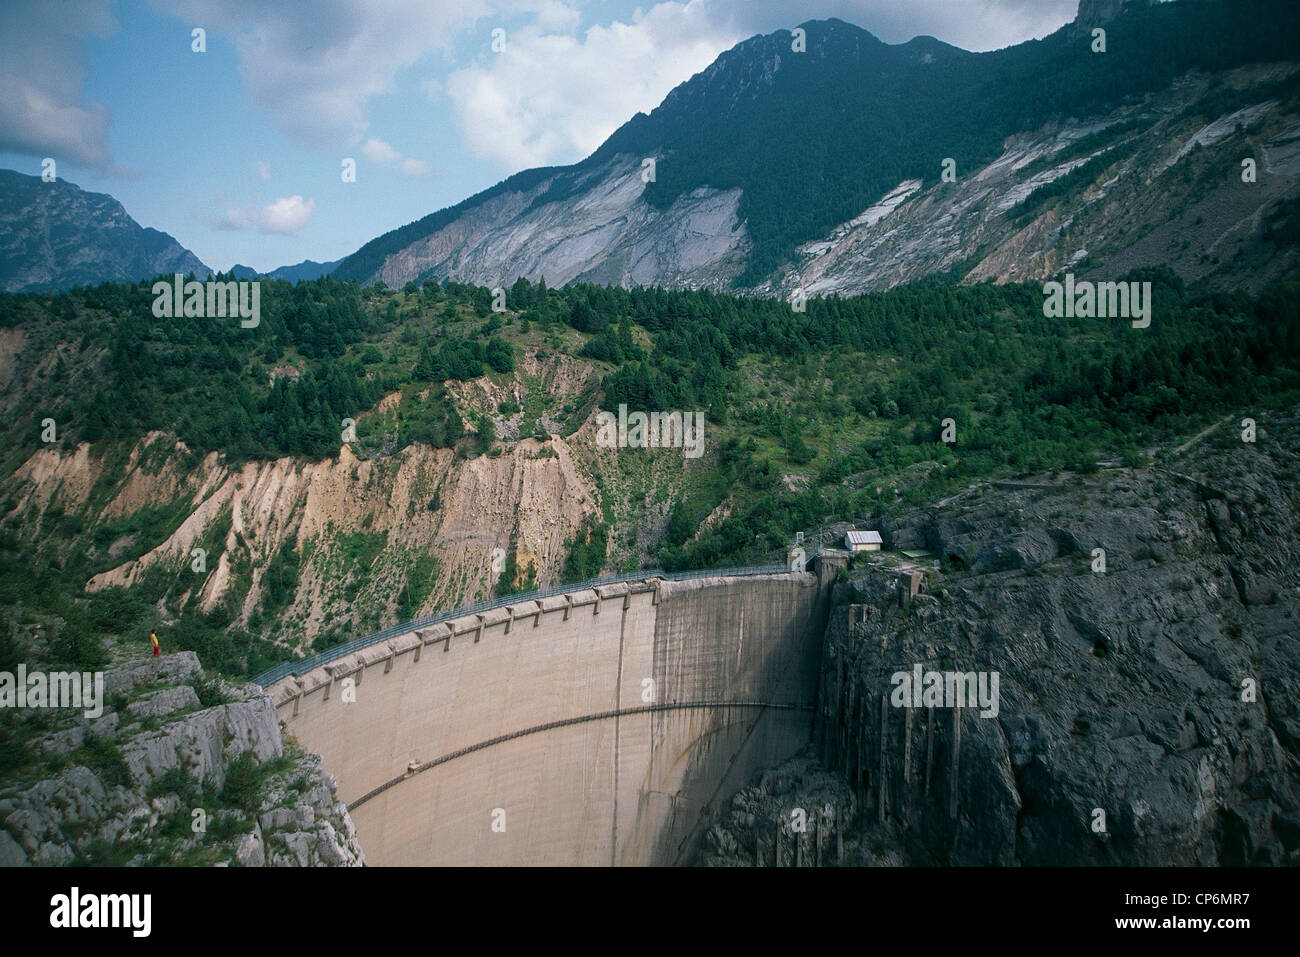 Le Frioul Parc Naturel Régional des Dolomites du Frioul (PN) barrage de Vajont Mont Mont Toc Toc, qui s'est effondré à l'intérieur de barrage lui-même Banque D'Images